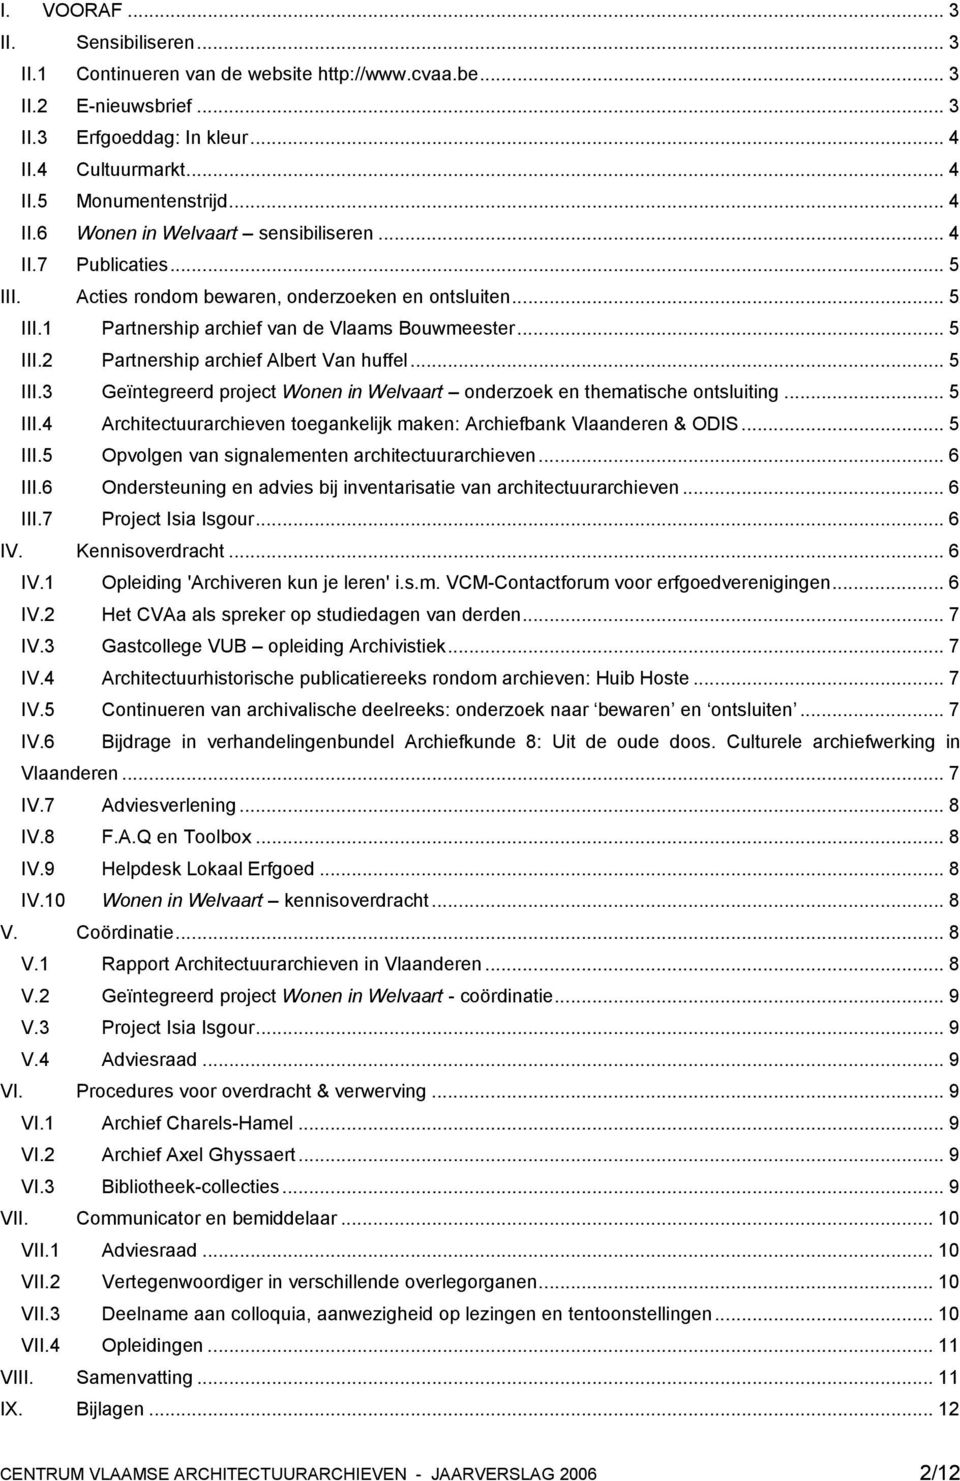 .. 5 III.3 Geïntegreerd project Wonen in Welvaart onderzoek en thematische ontsluiting... 5 III.4 Architectuurarchieven toegankelijk maken: Archiefbank Vlaanderen & ODIS... 5 III.5 Opvolgen van signalementen architectuurarchieven.